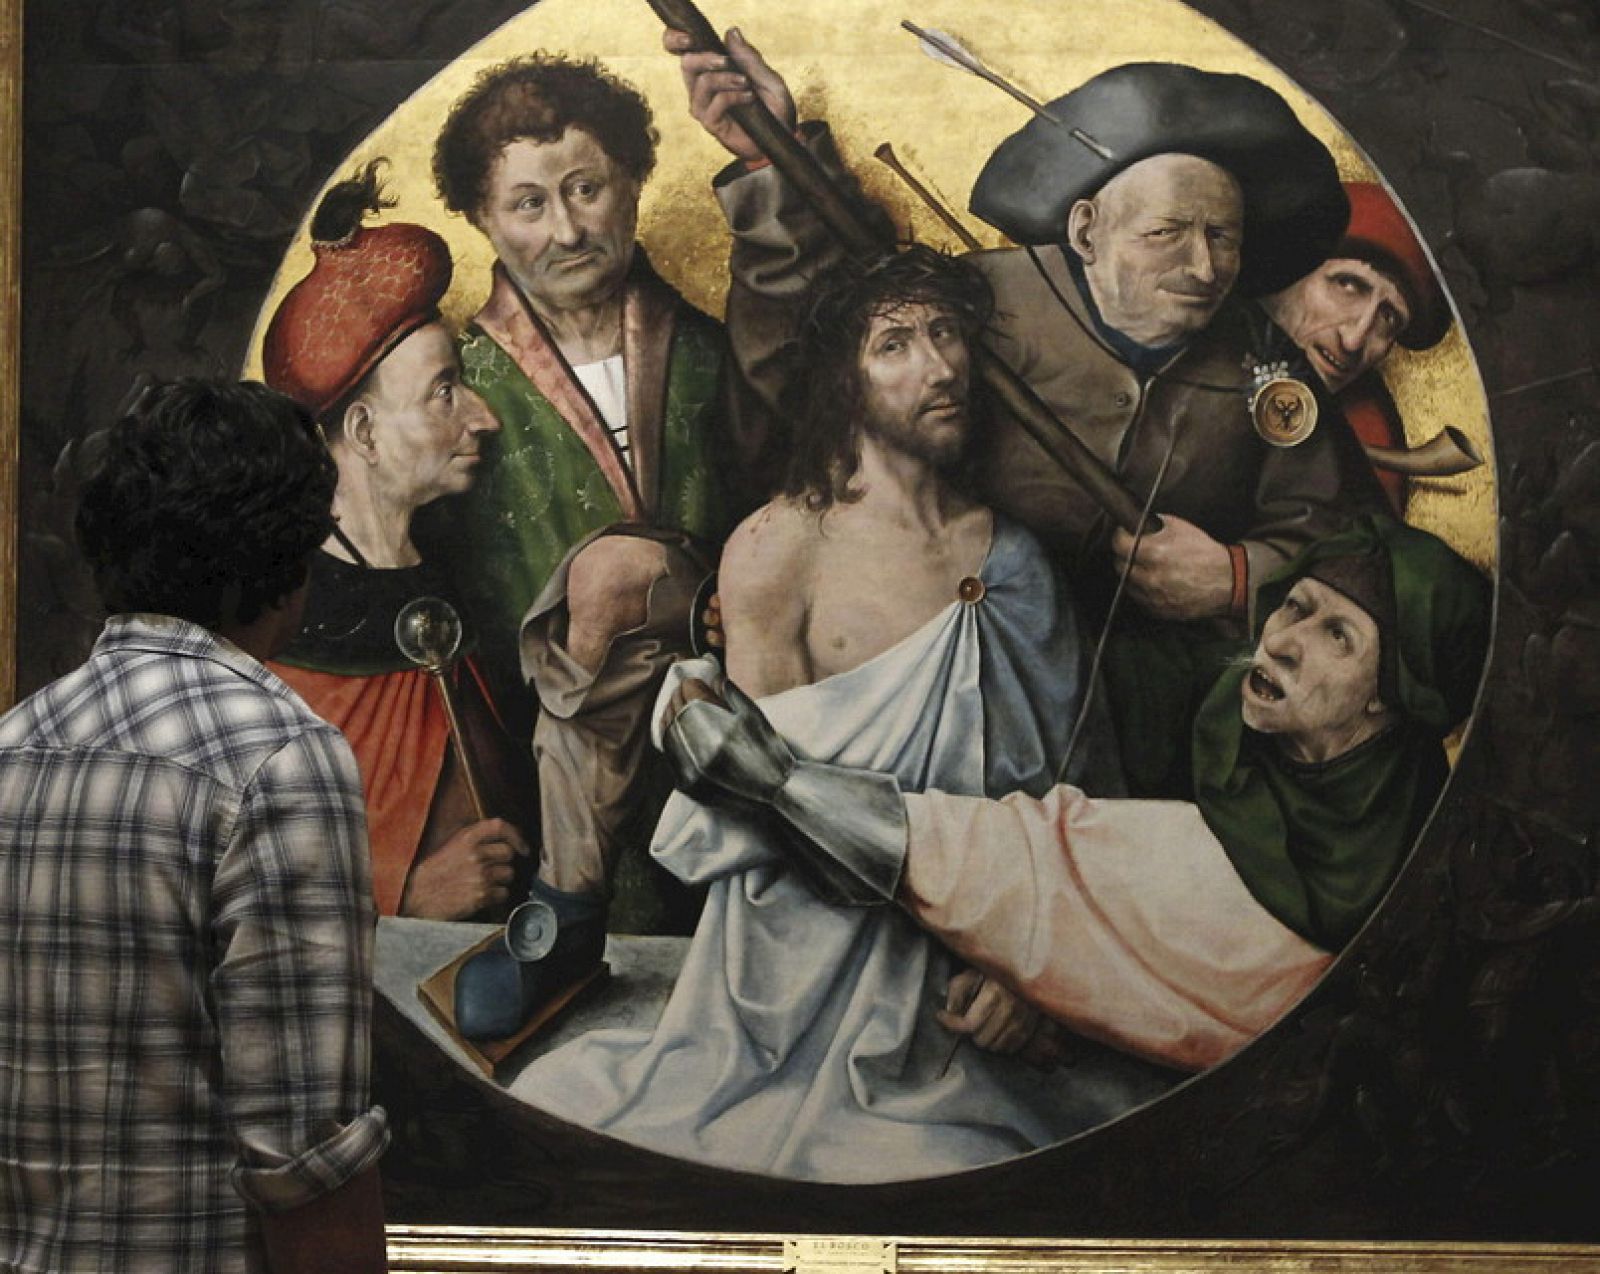 Un hombre observa la obra "Cristo coronado de espinas", de El Bosco, que forma parte de la exposición "De El Bosco a Tiziano. Arte y Maravilla en El Escorial".